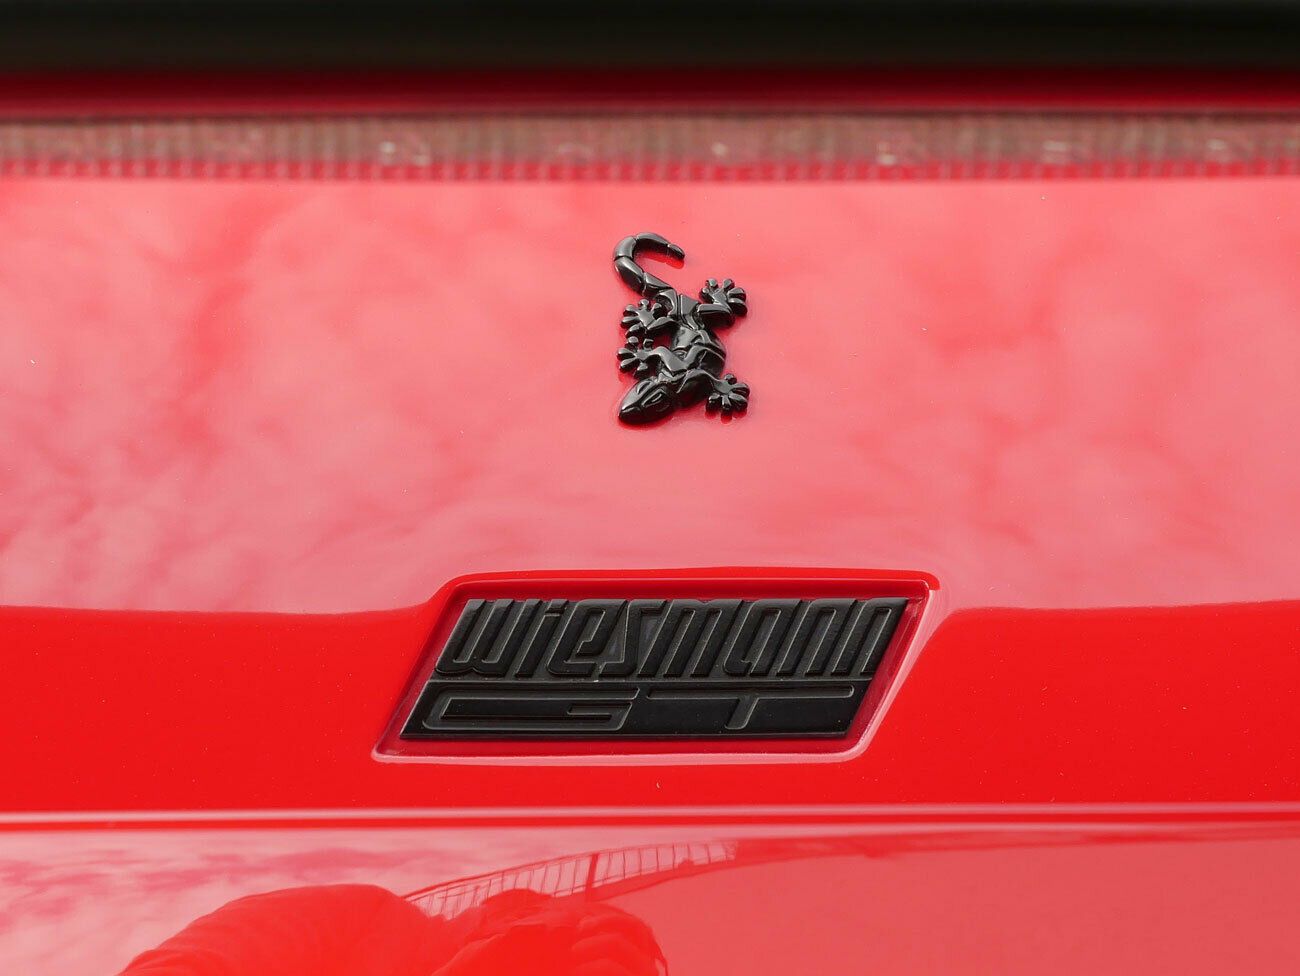 Wiesmann MF 5 GT*Rot/Schwarz*Brembo-Bremsanlage*MwSt.*